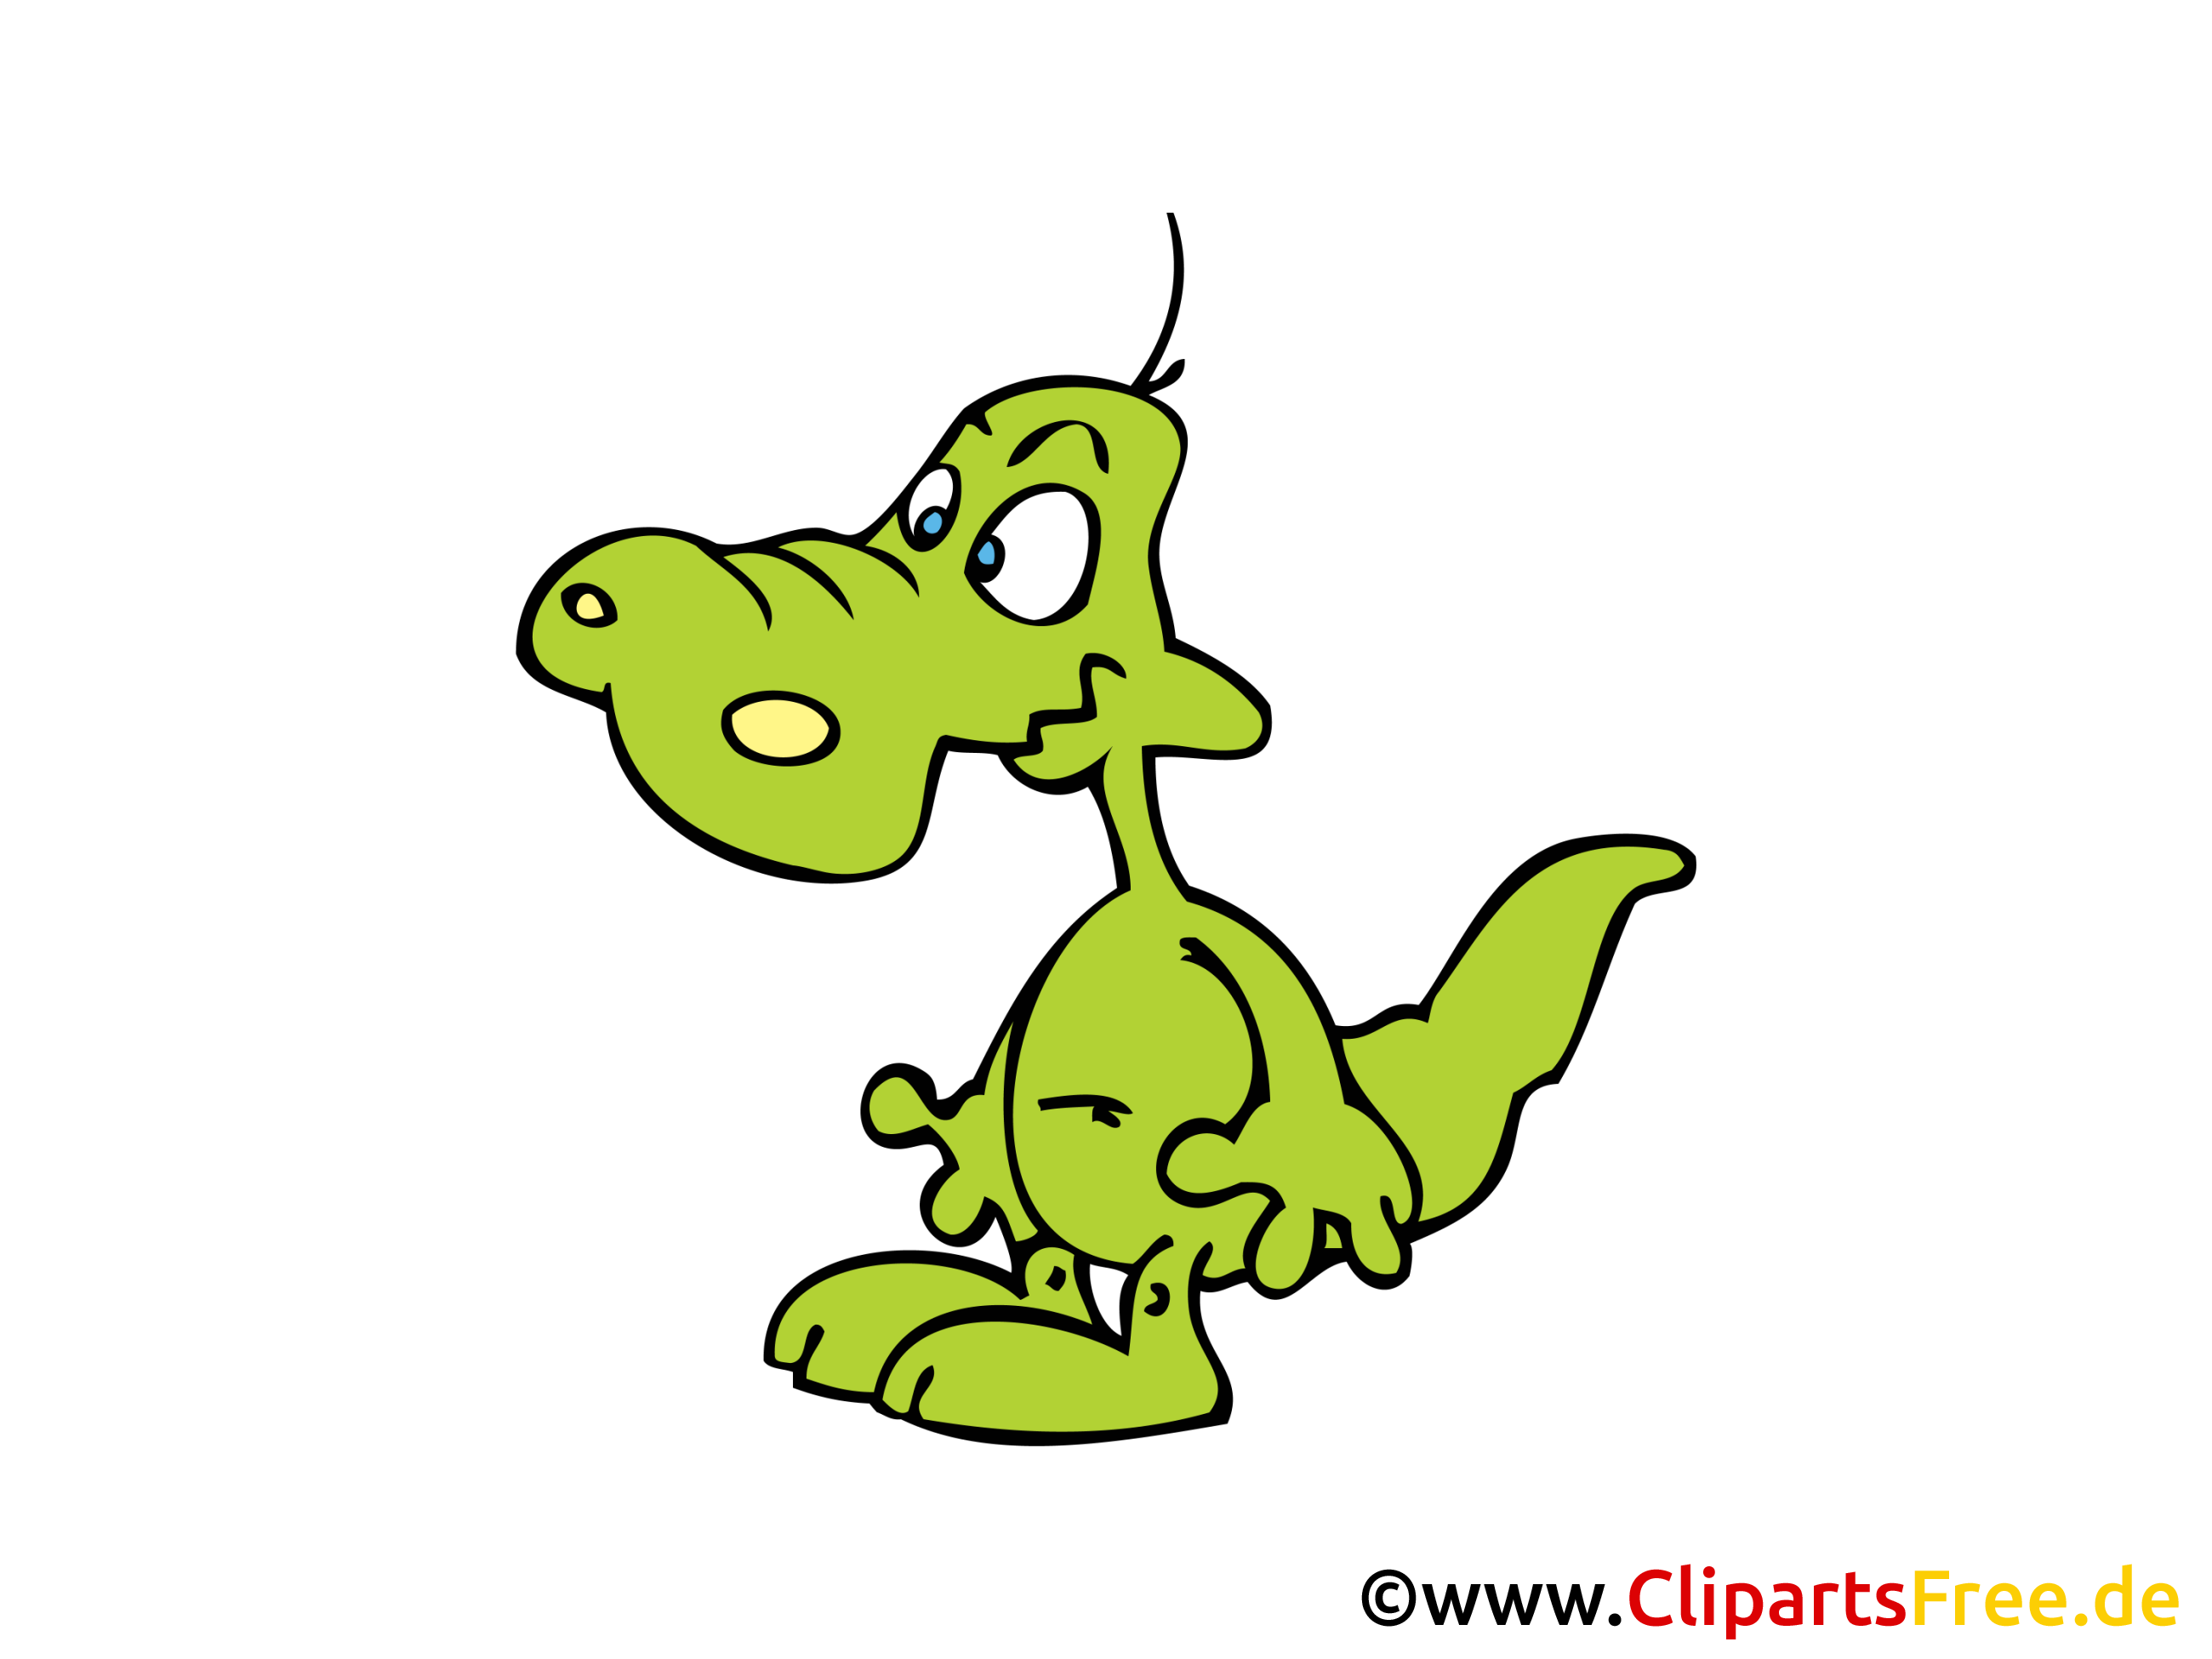 Crocodile images – Animal clip art gratuit